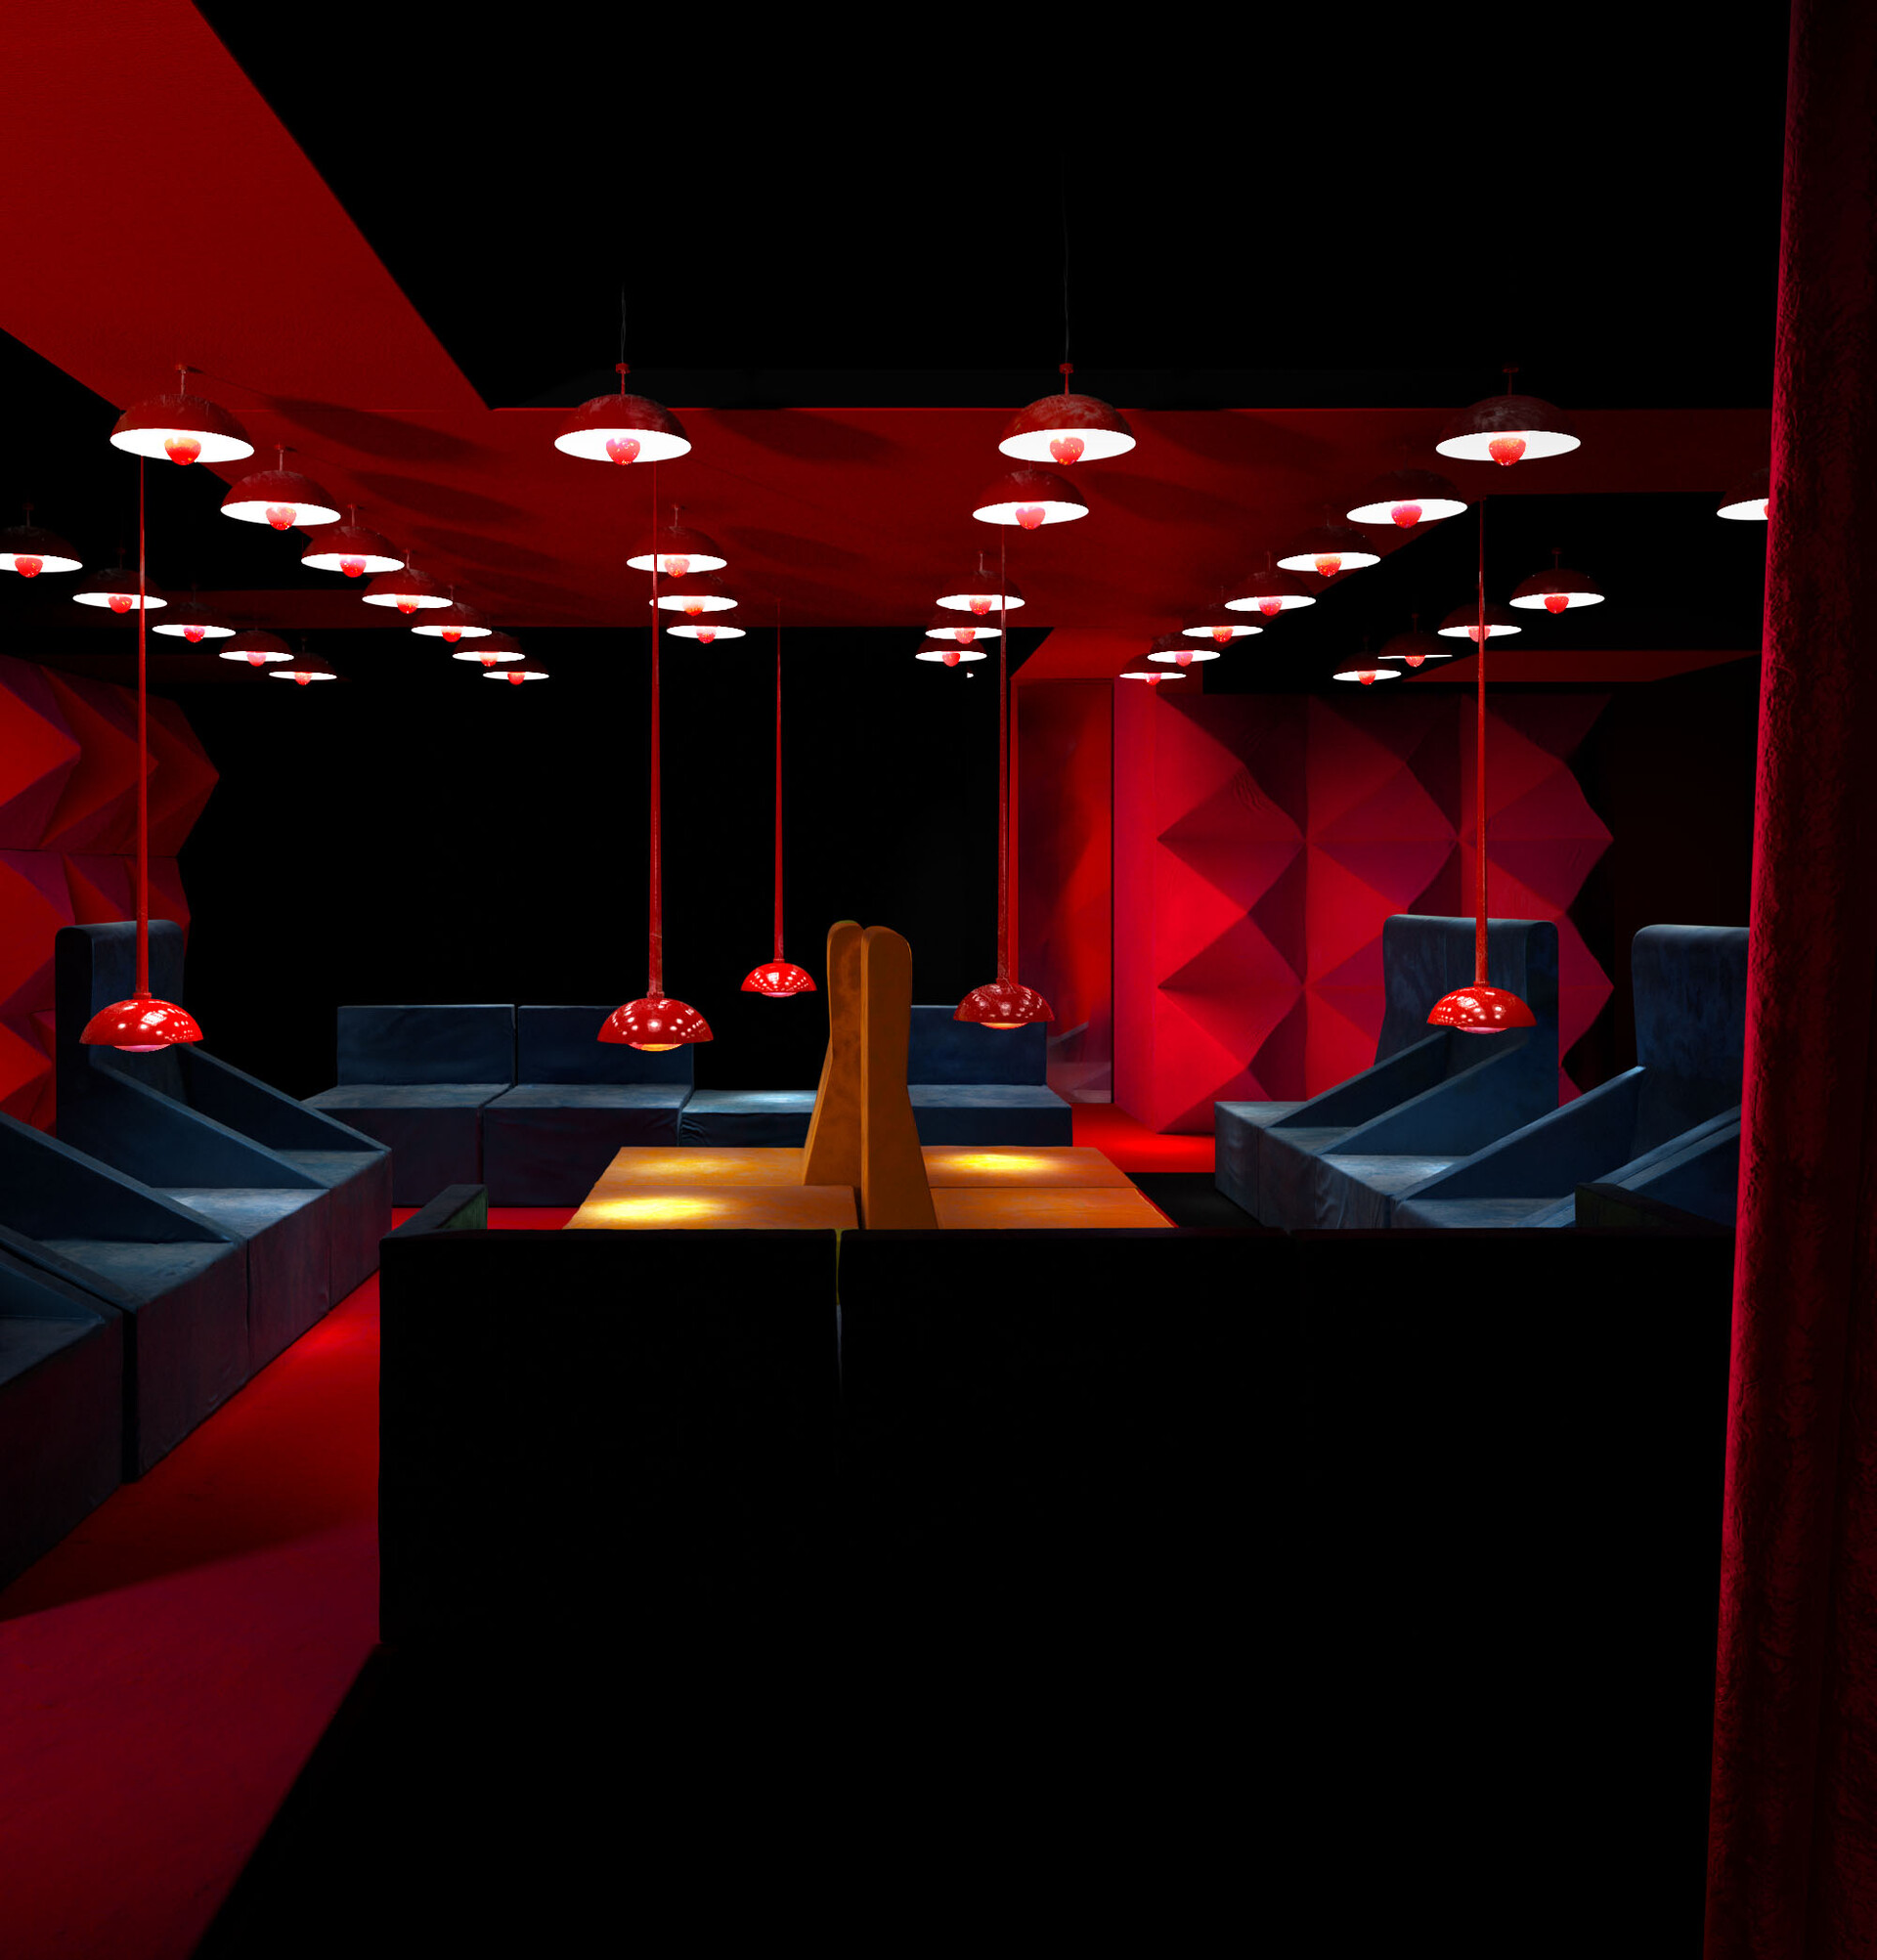 Включи red room. Red Room" красная комната  (1999) ужасы ". Красная комната Марвел. Самая красивая красная комната для игр. Интерьеры в игровой зал красно черный.